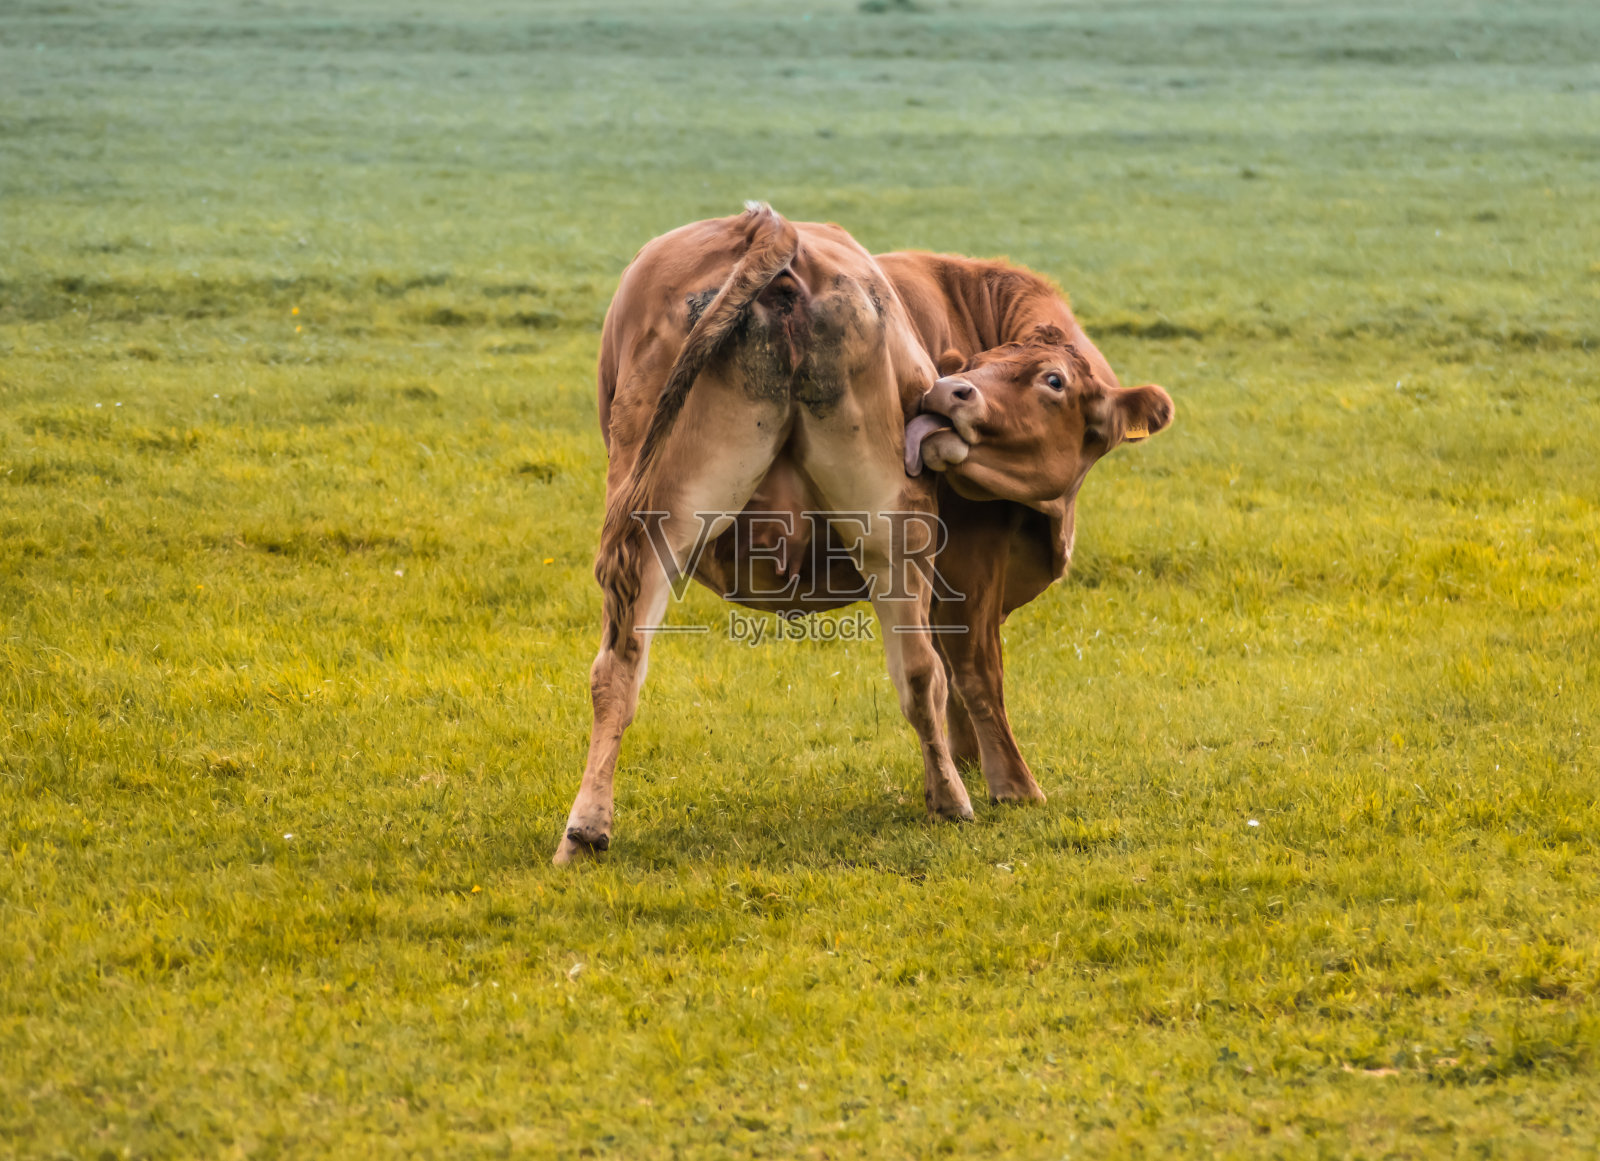 这张照片拍摄的是一头奶牛在绿色草地上向后看的背影照片摄影图片